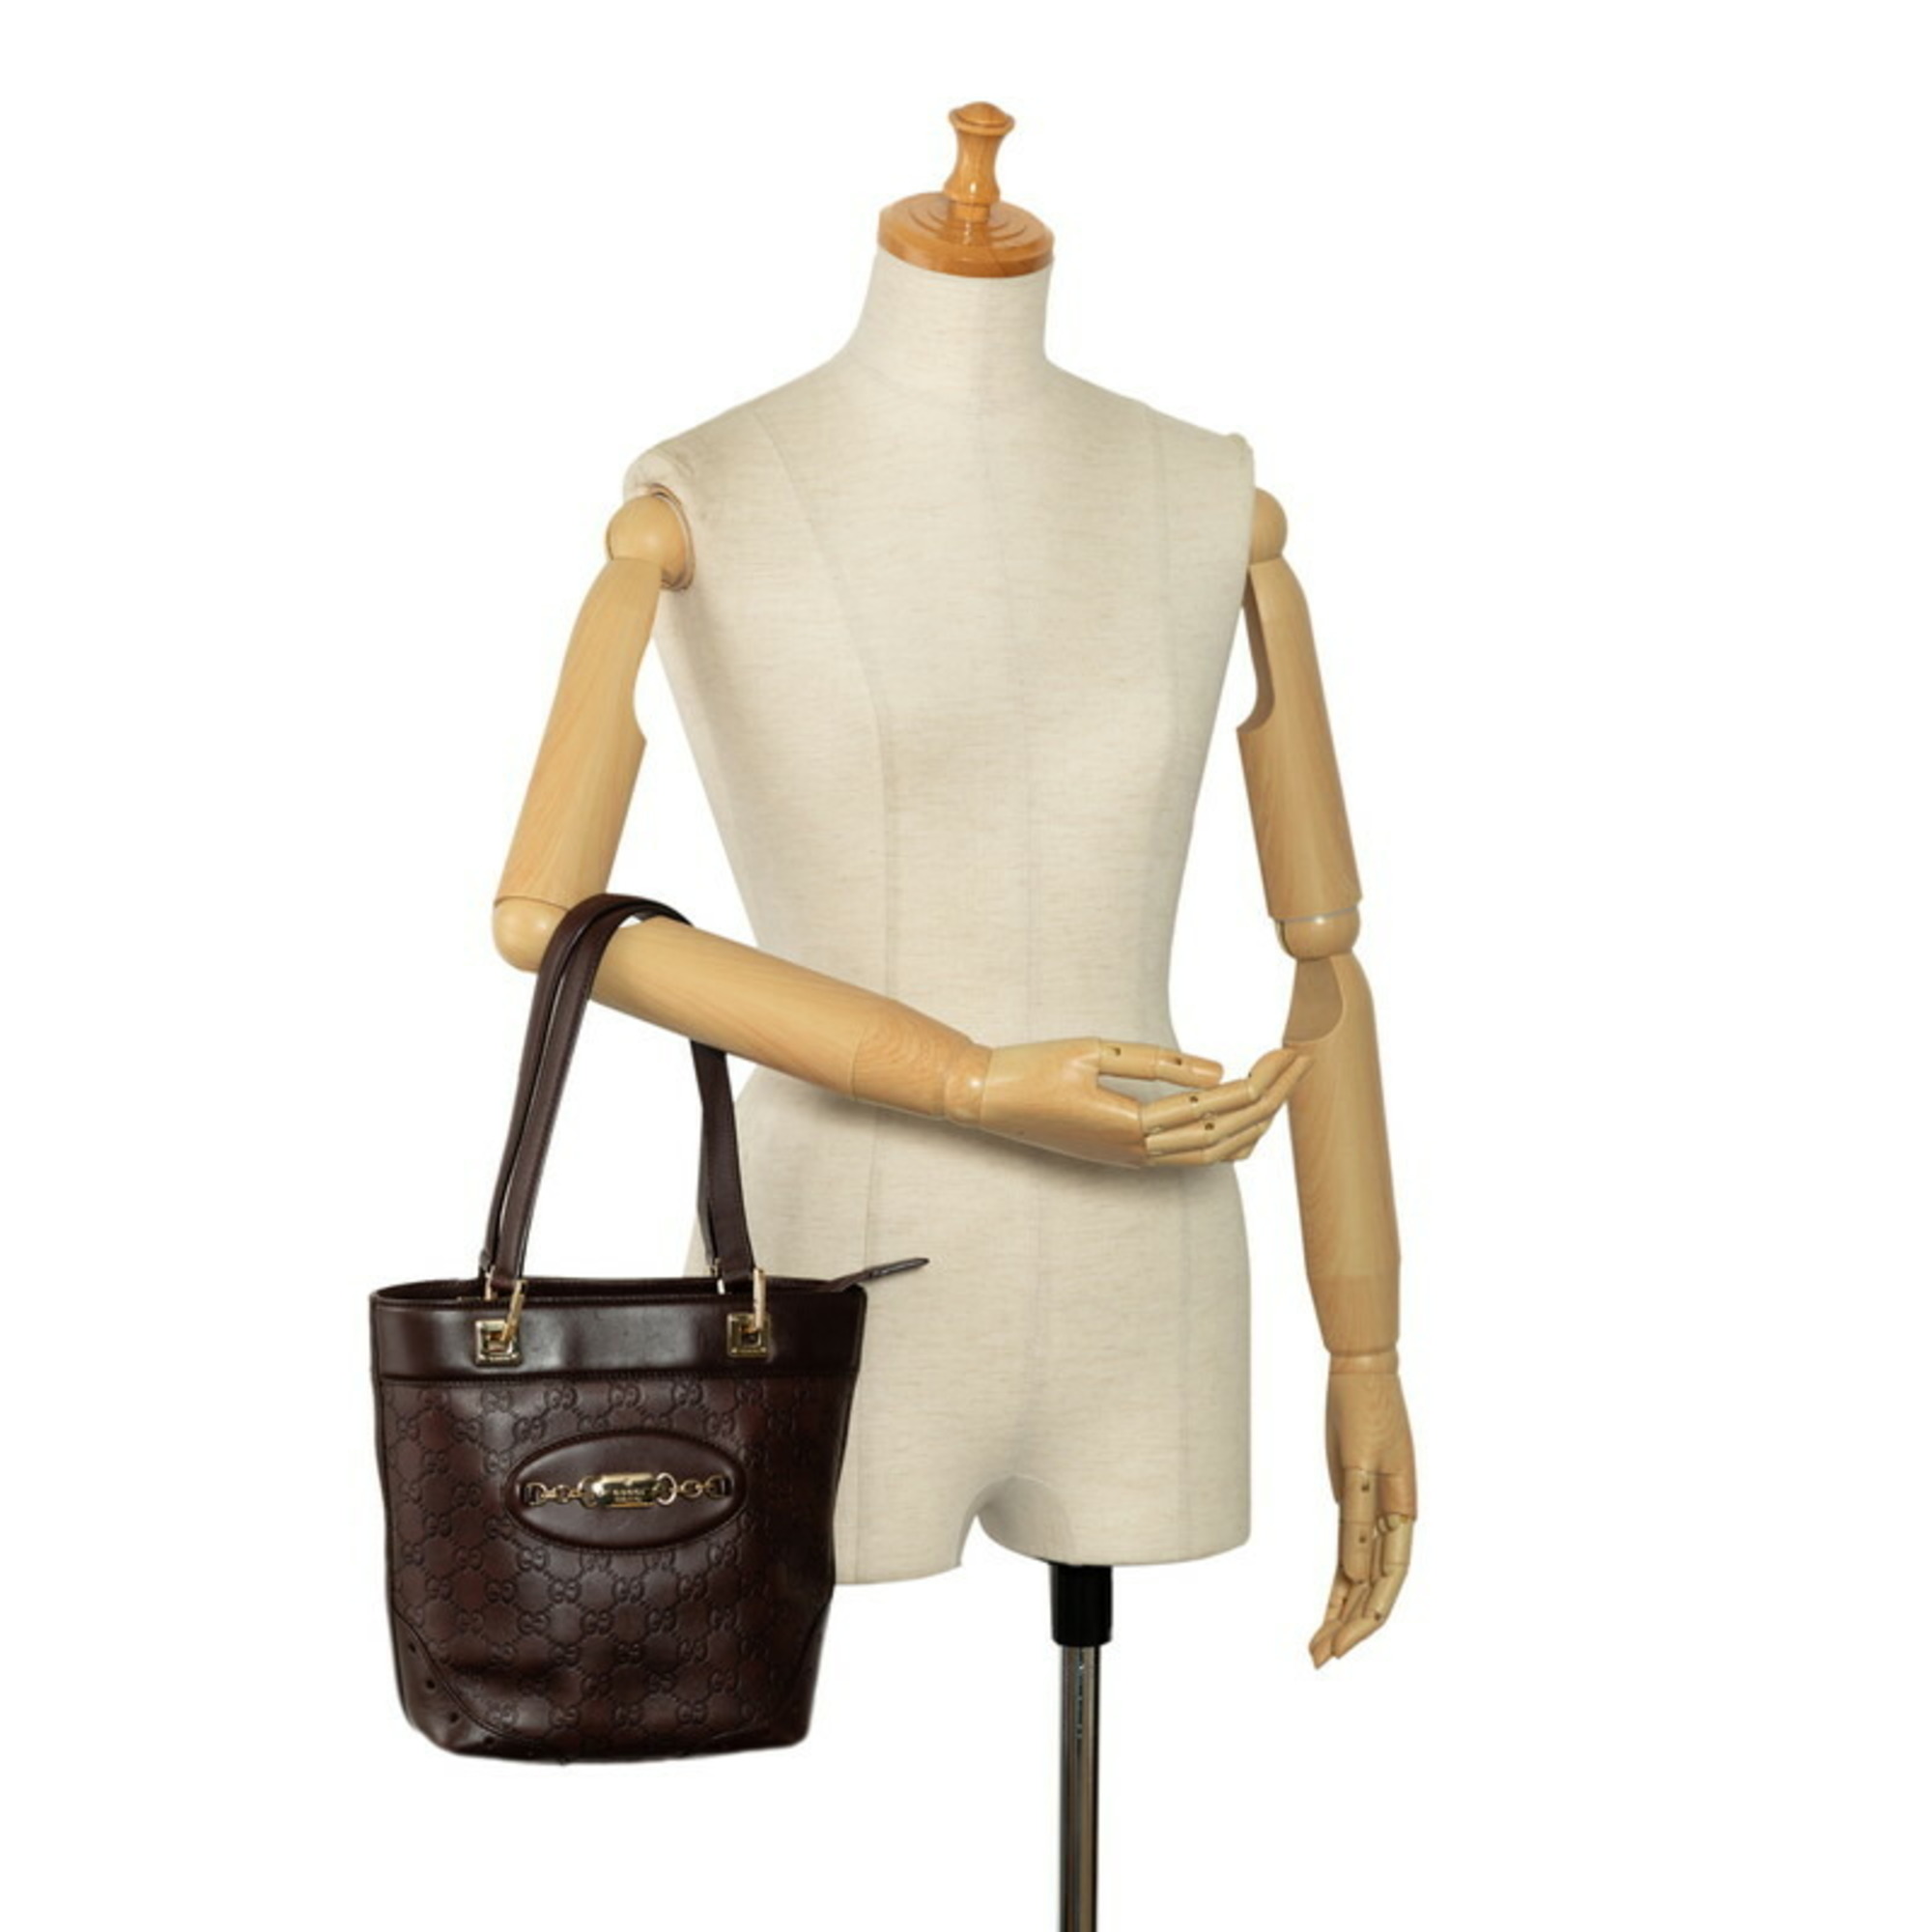 Gucci Guccissima Horsebit Handbag Tote Bag 145994 Brown Gold Leather Women's GUCCI